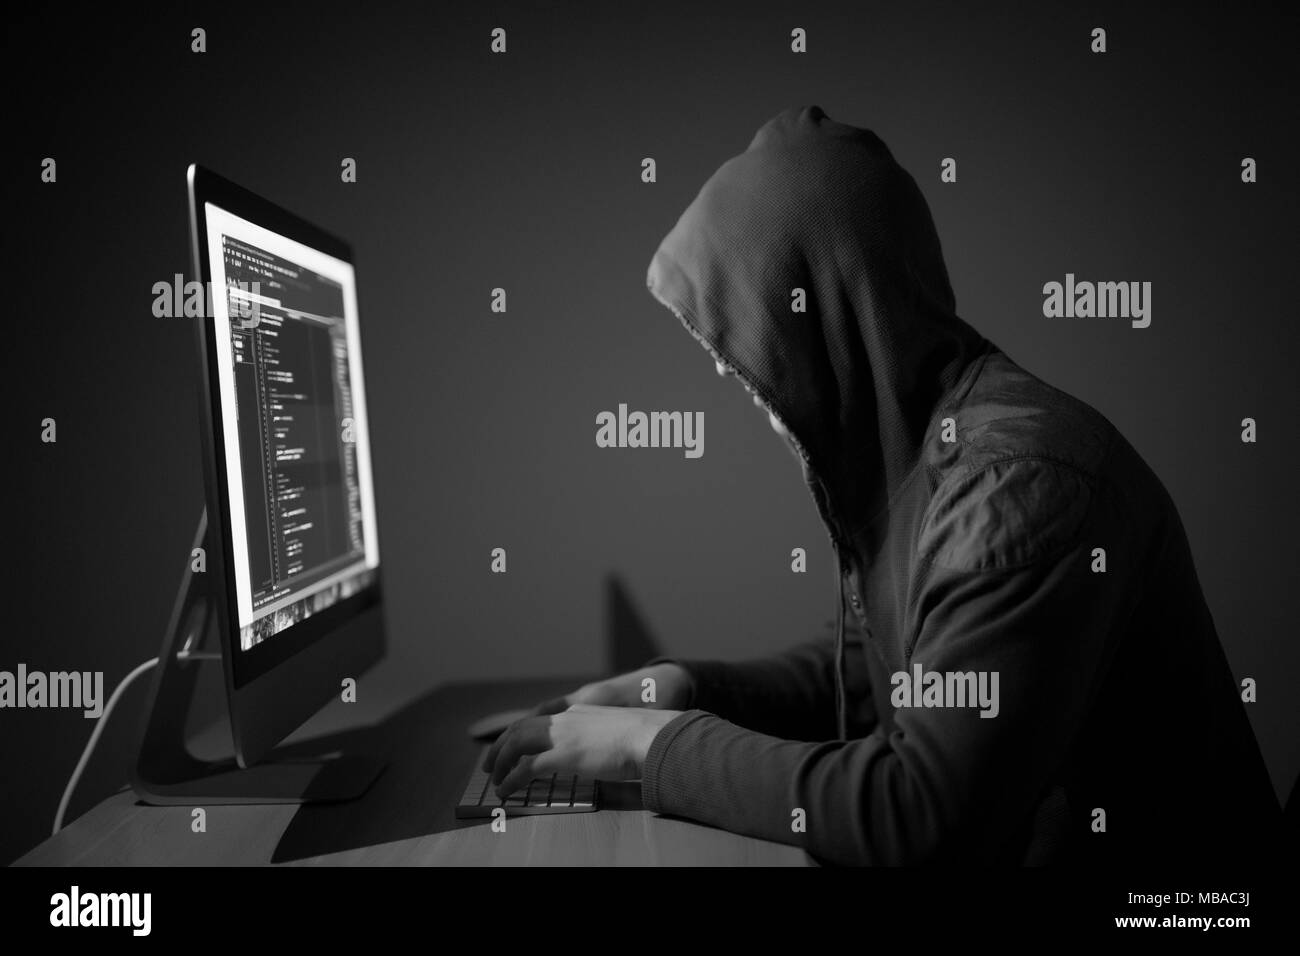 Computer hacker in hood working in dark room Stock Photo